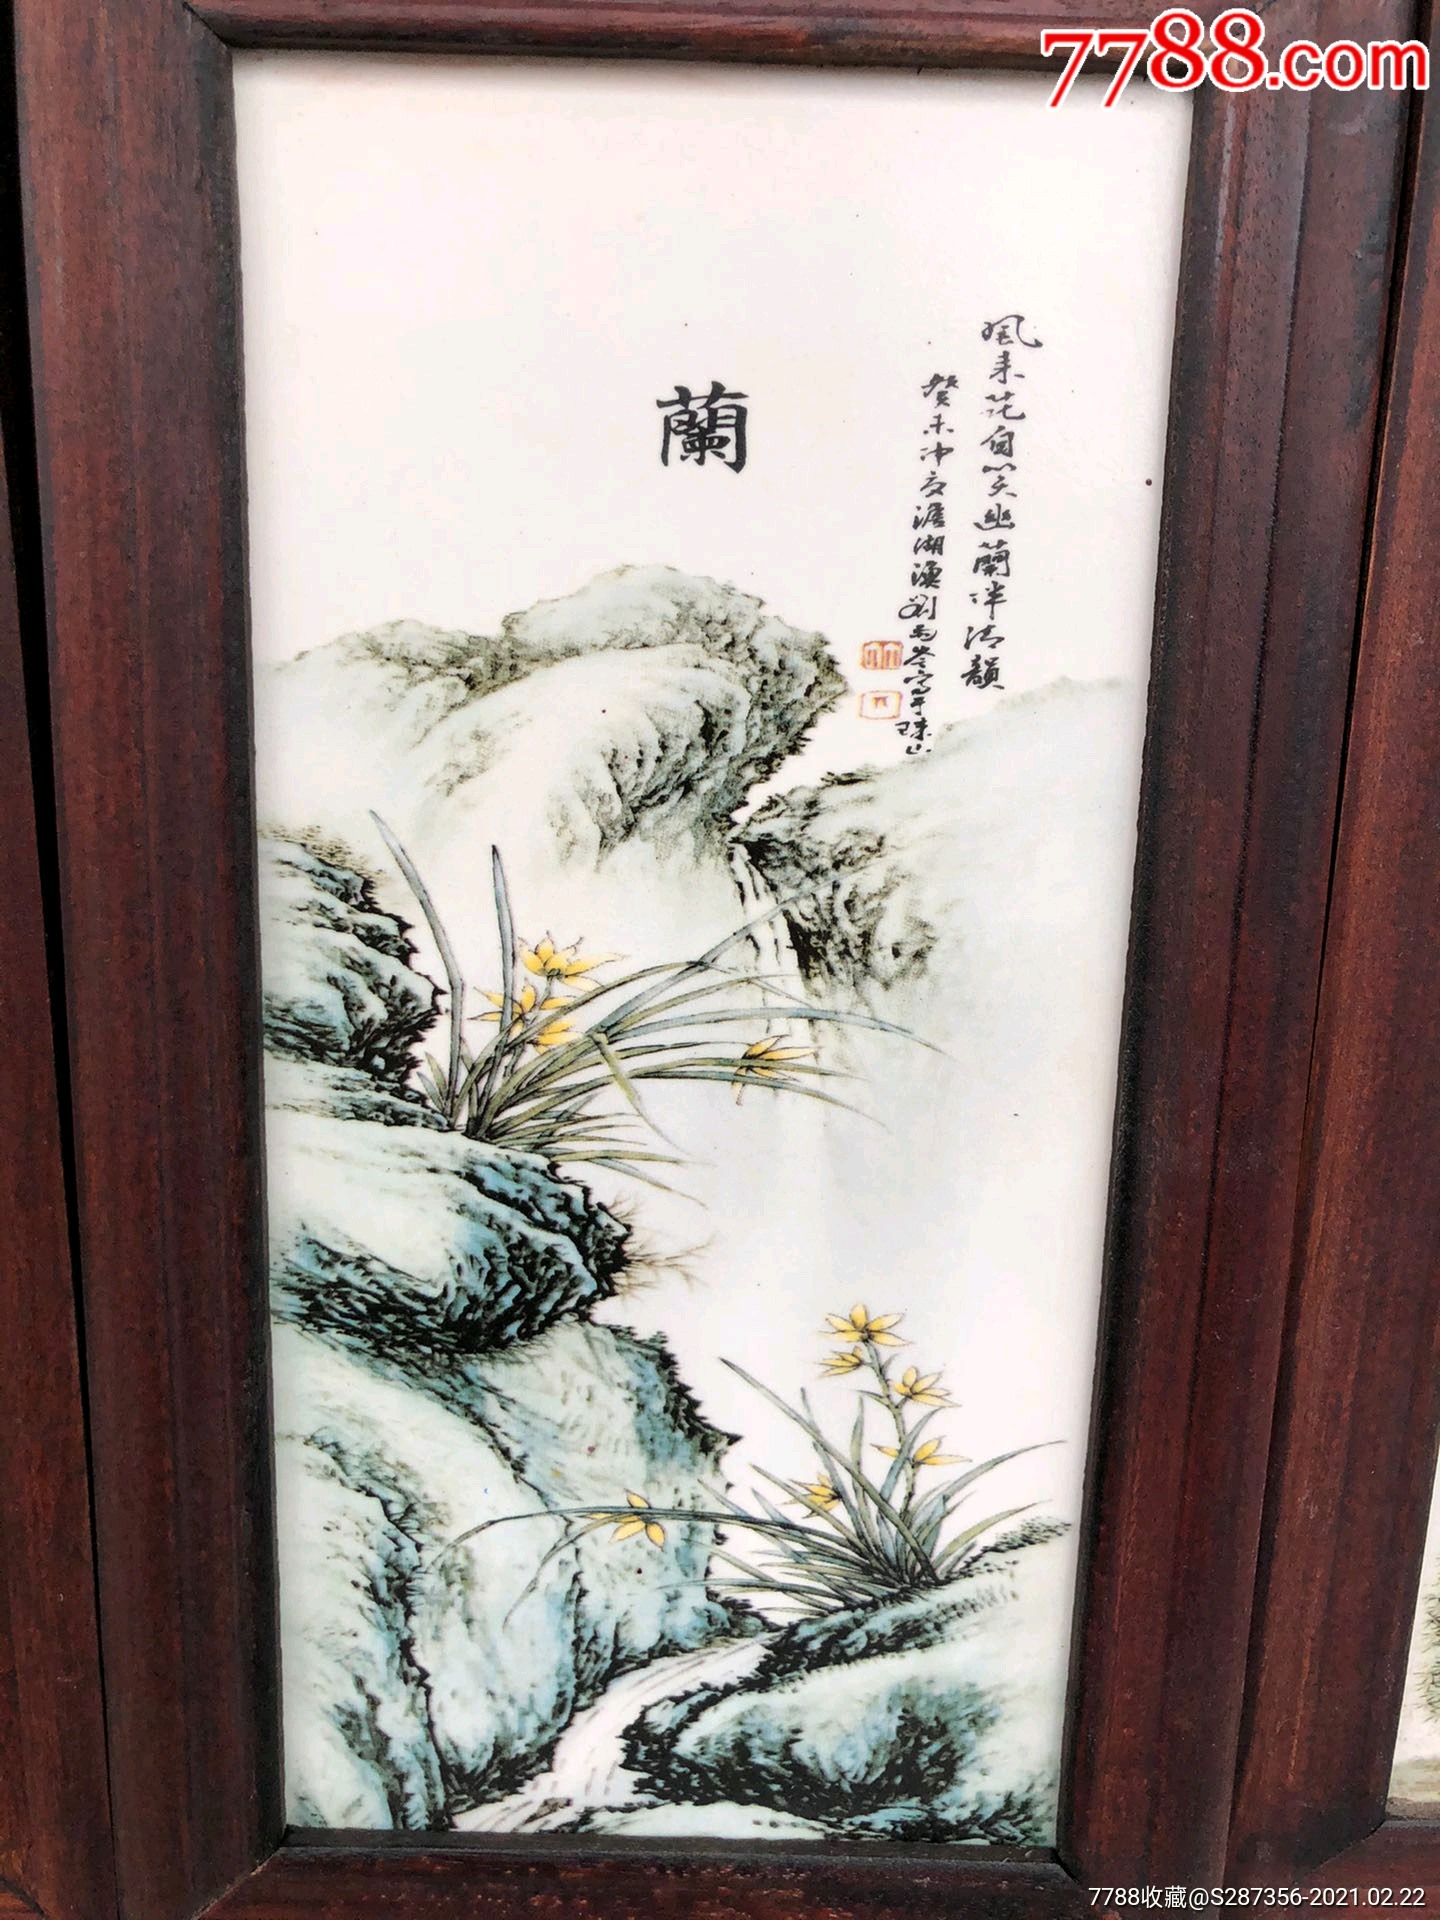 《刘雨岑》作品红木镶瓷板画梅兰竹菊